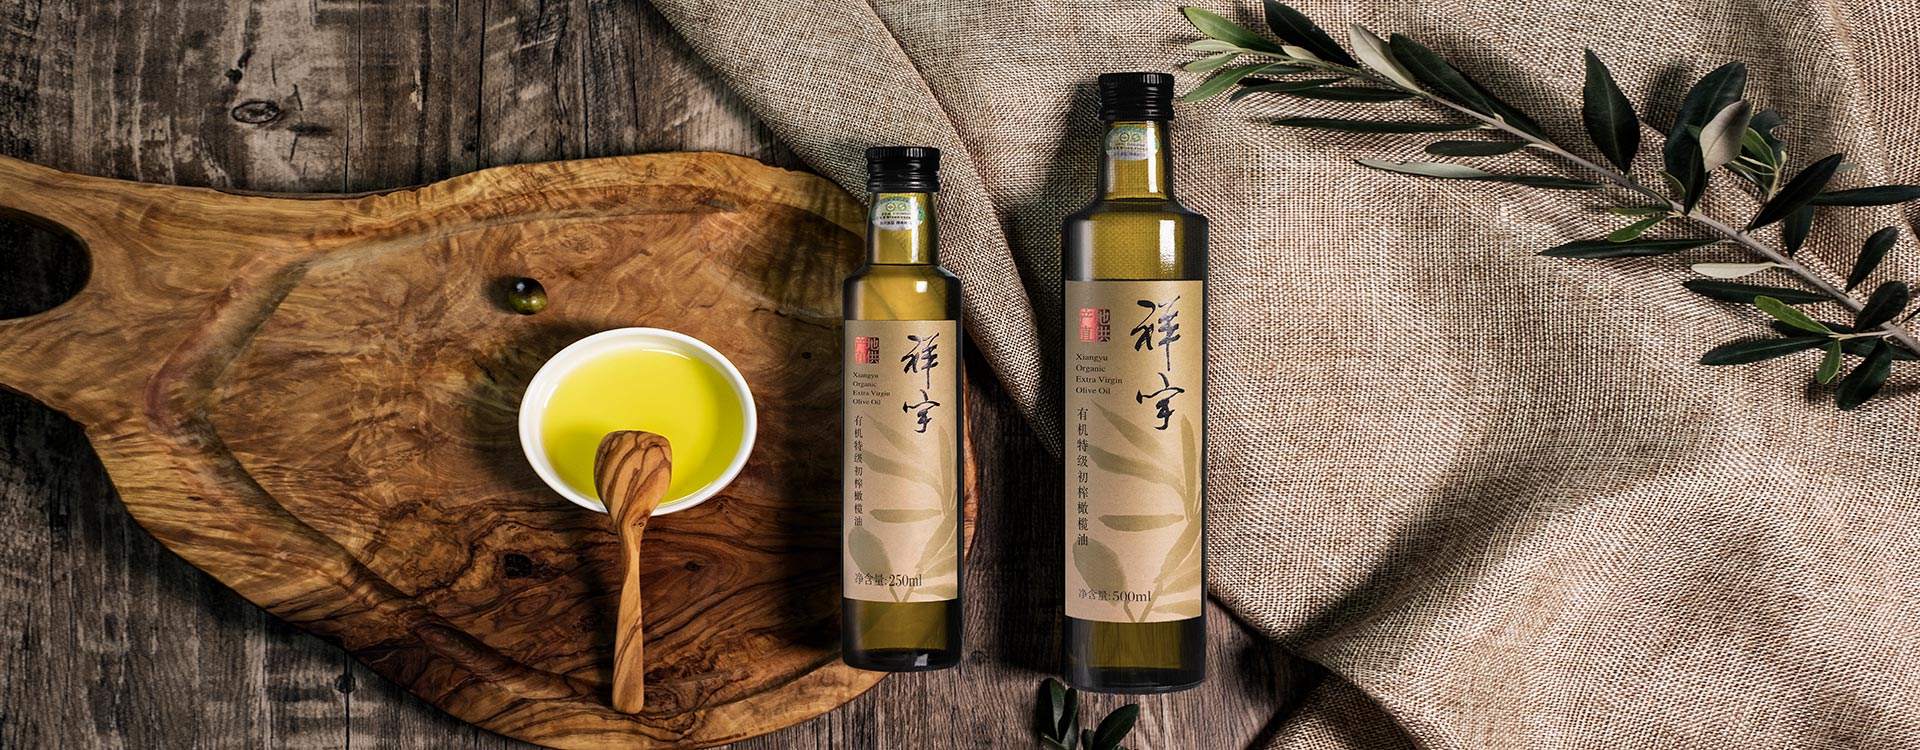 祥宇有機特級初榨橄欖油